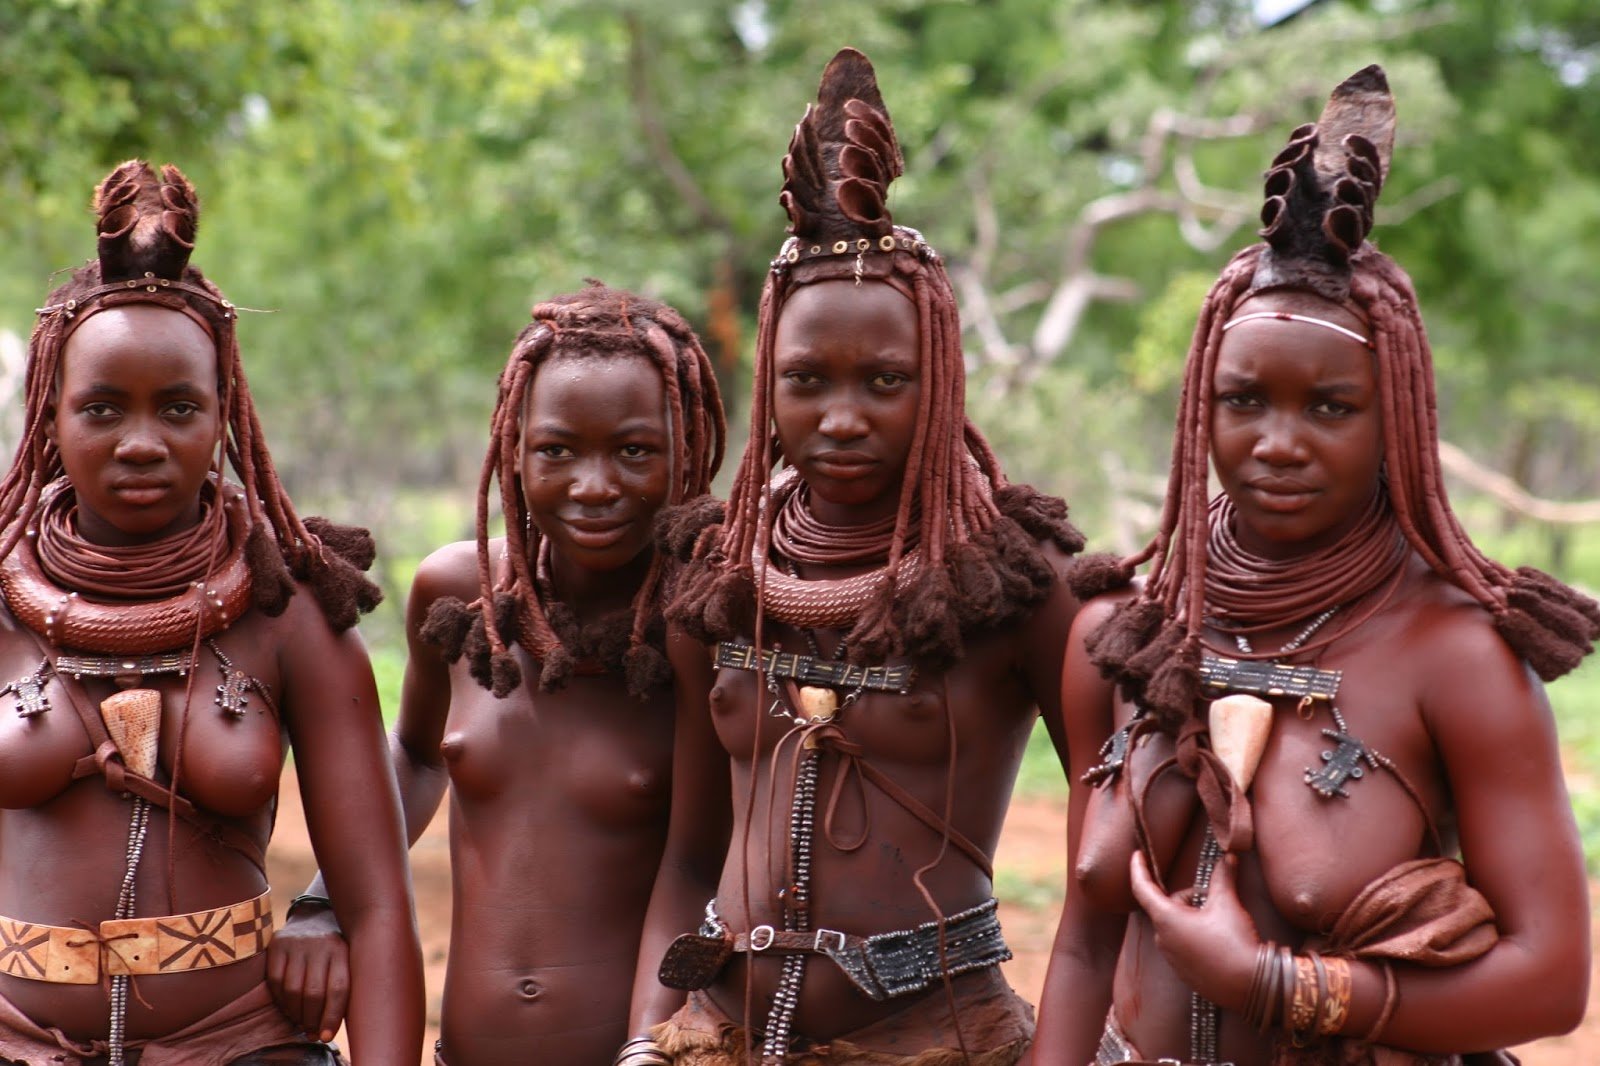 African teens nude body